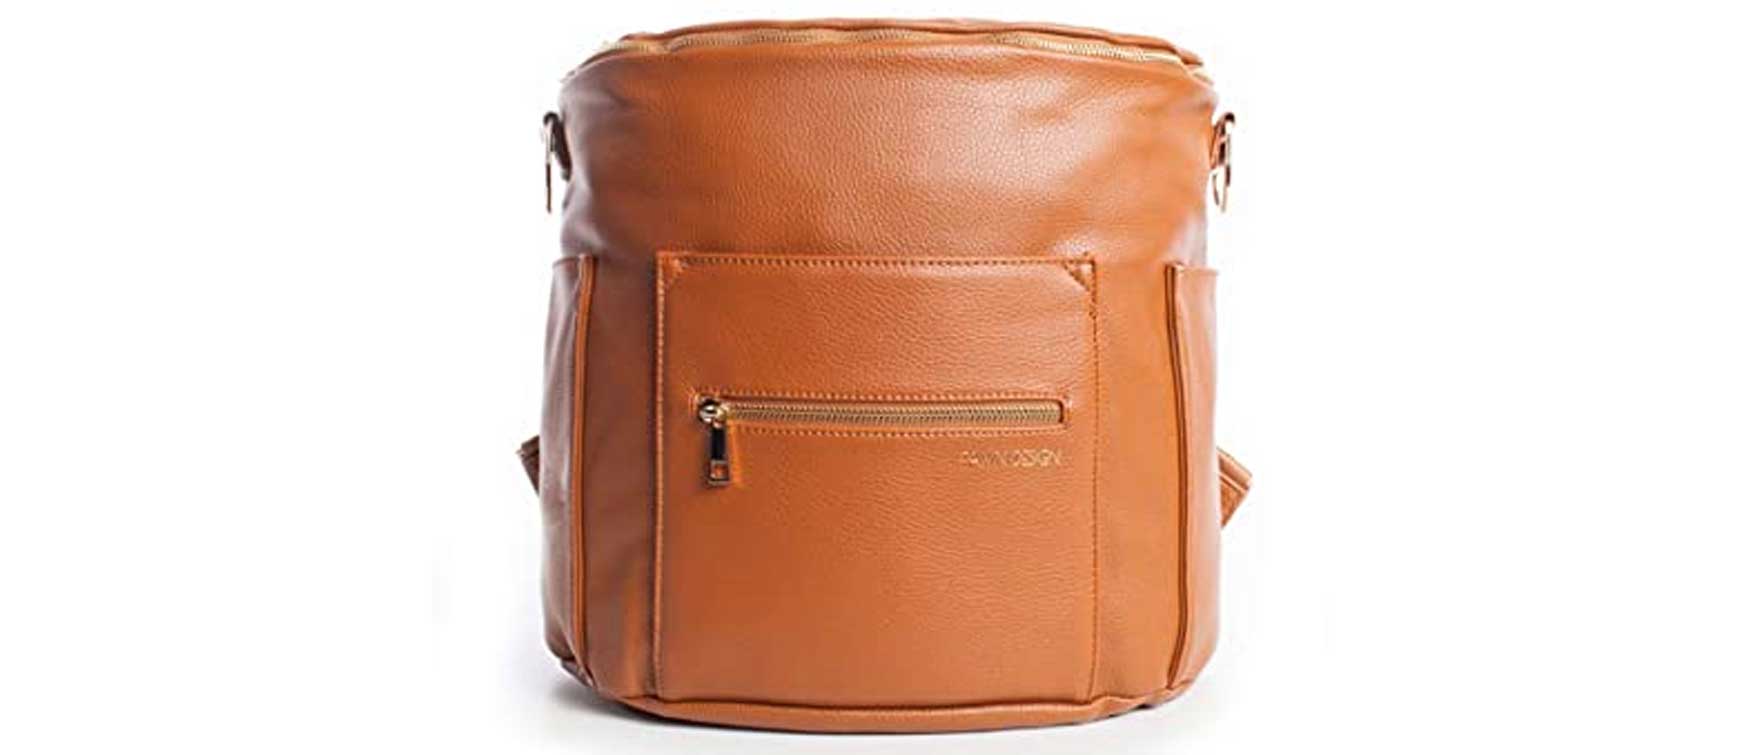 9. Fawn Design Premium Vegan Leather Diaper Bag and Backpack  